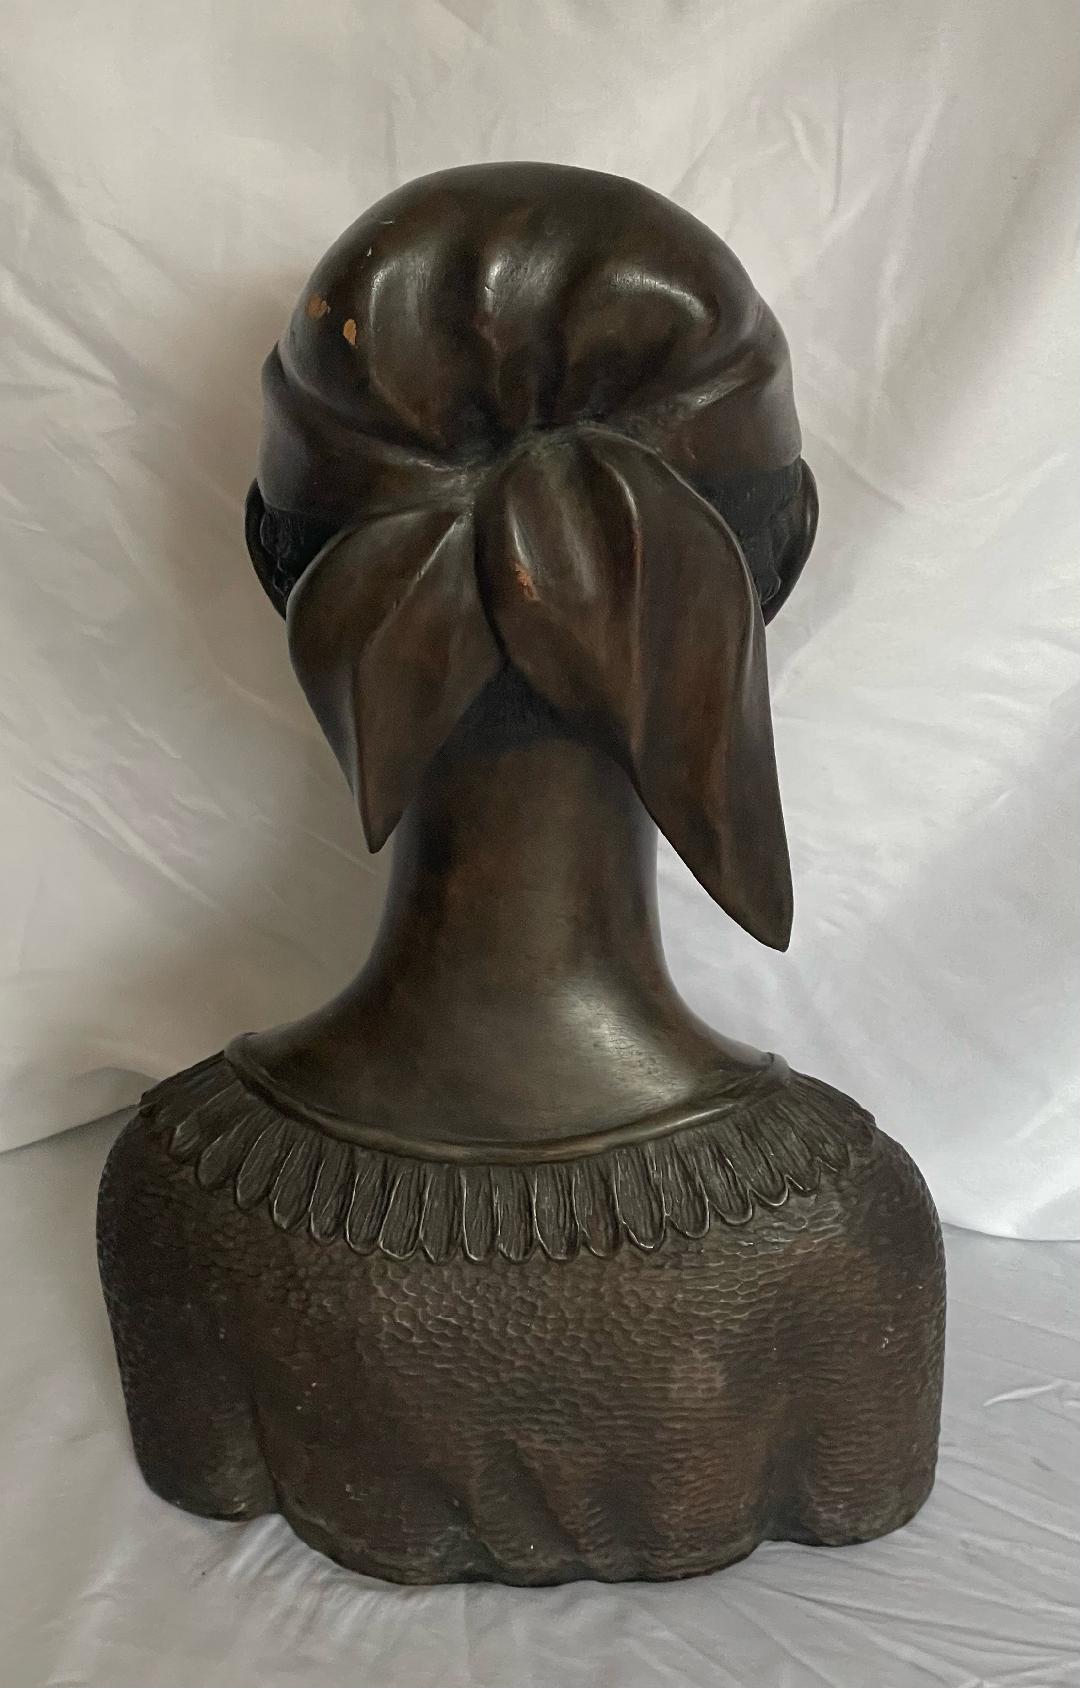 LS Decimus 10"Lx6"W"x15"H Buste féminin noir sculpté à la main en bois d'acajou #1MFN